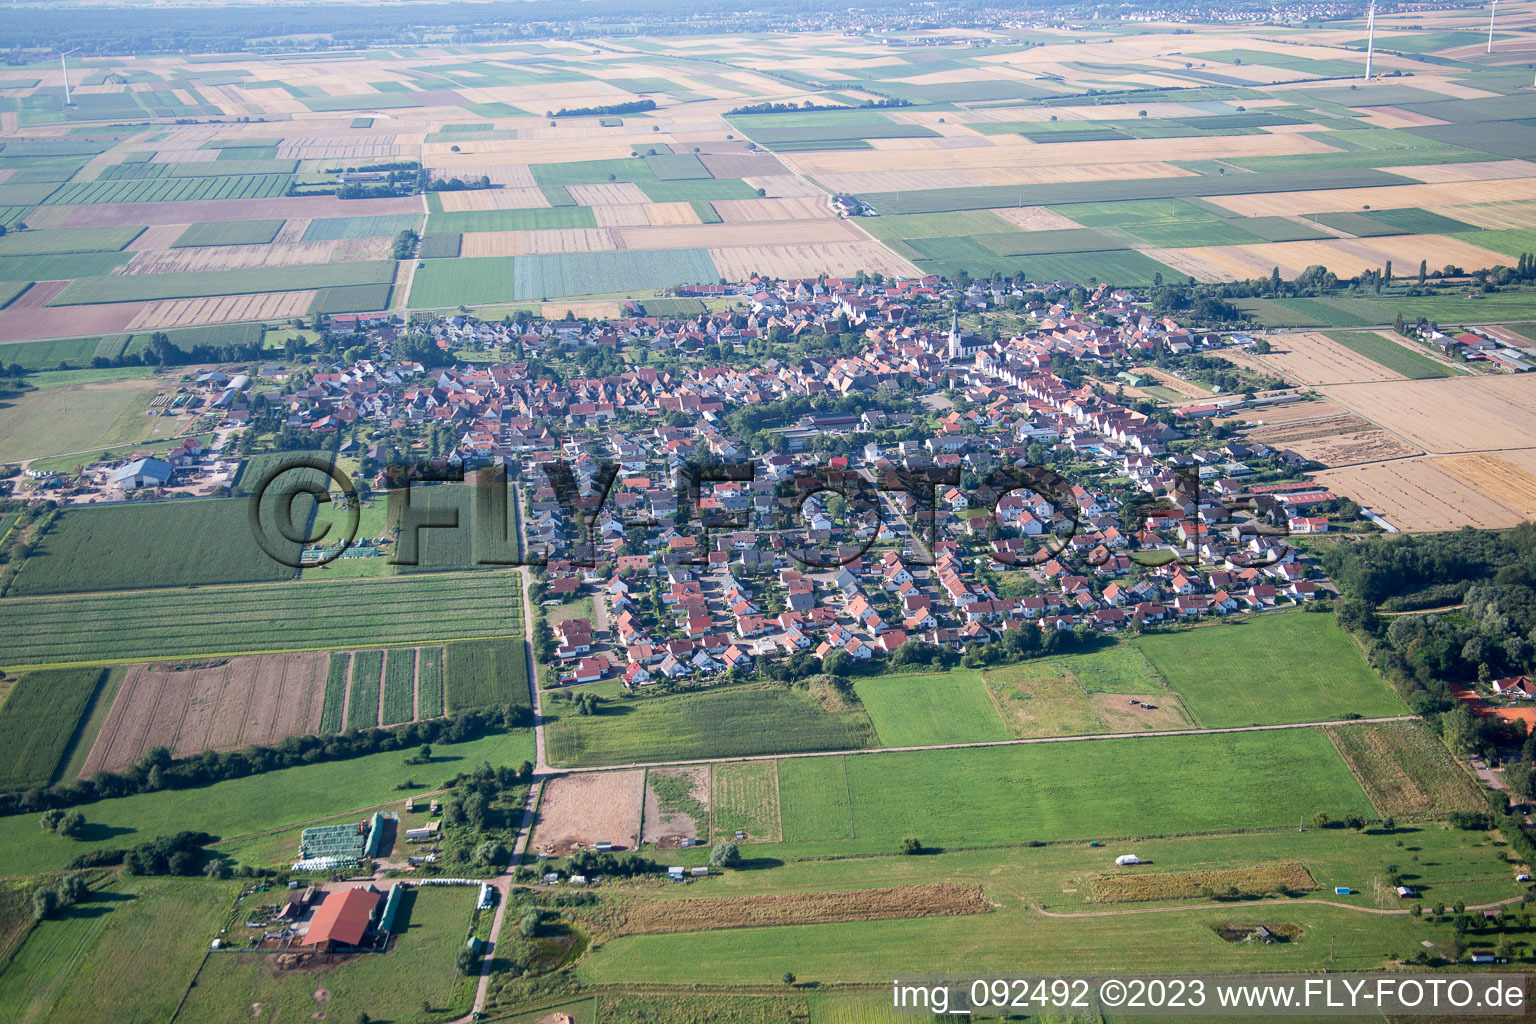 Ottersheim bei Landau im Bundesland Rheinland-Pfalz, Deutschland von einer Drohne aus